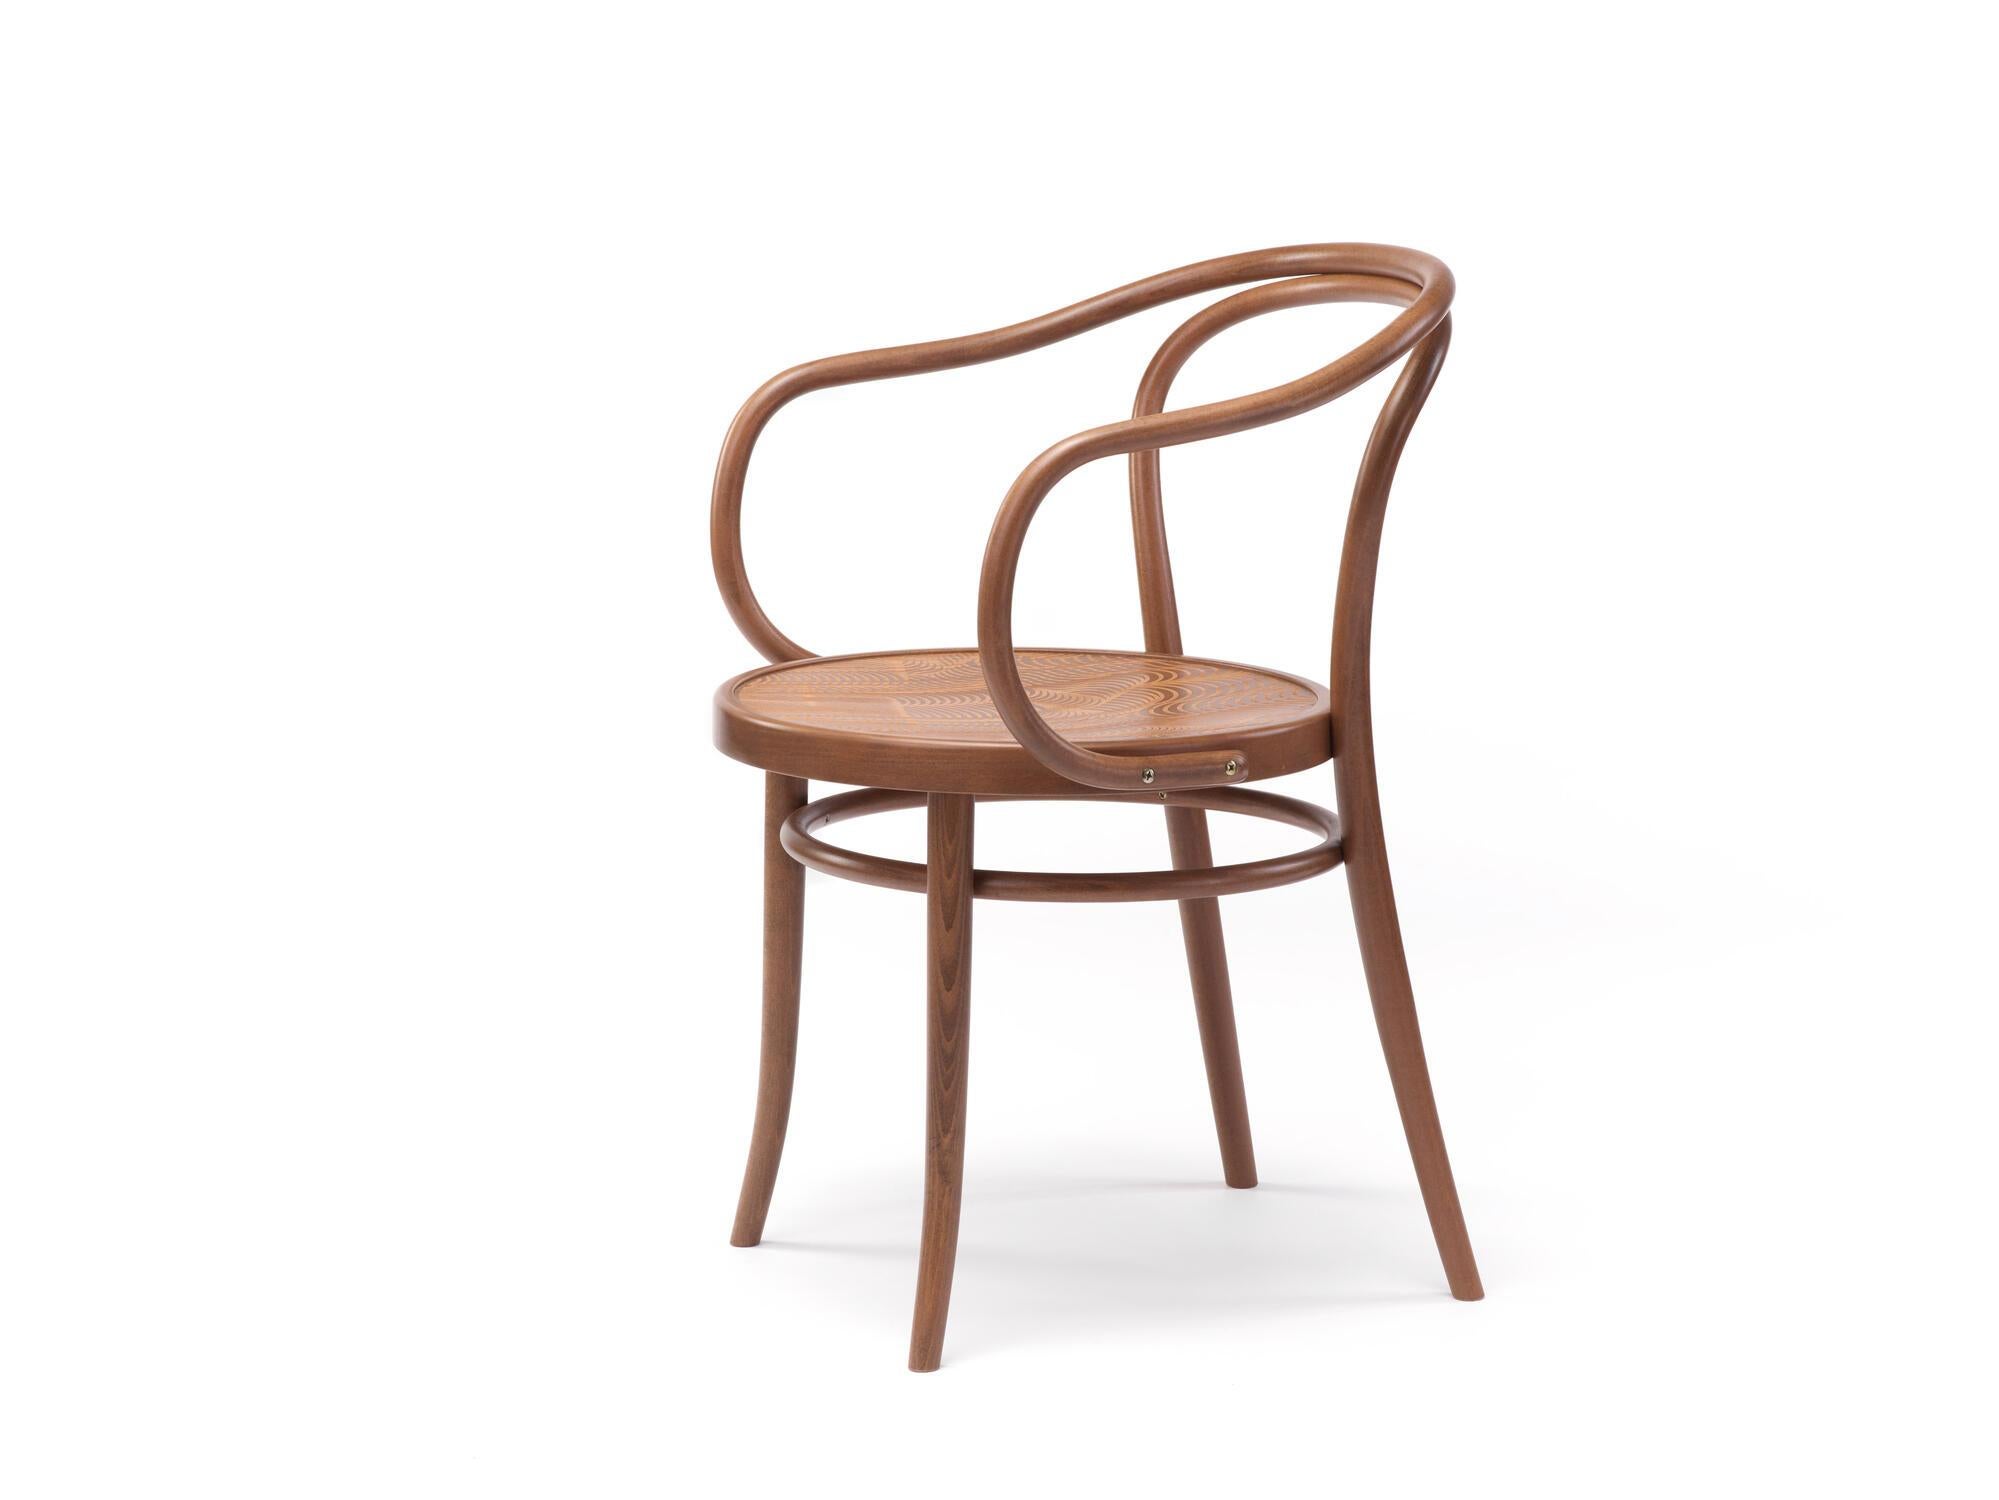 Sessel Nr. 30
Der ikonische Bistrostuhl wurde 1869 von Michael Thonet entworfen und wird heute in der gleichen Manufaktur in der Tschechischen Republik von TON hergestellt. 

Holz: Buche massiv 
Ausführung: natürliches Licht 
Sitz: schlichtes Holz